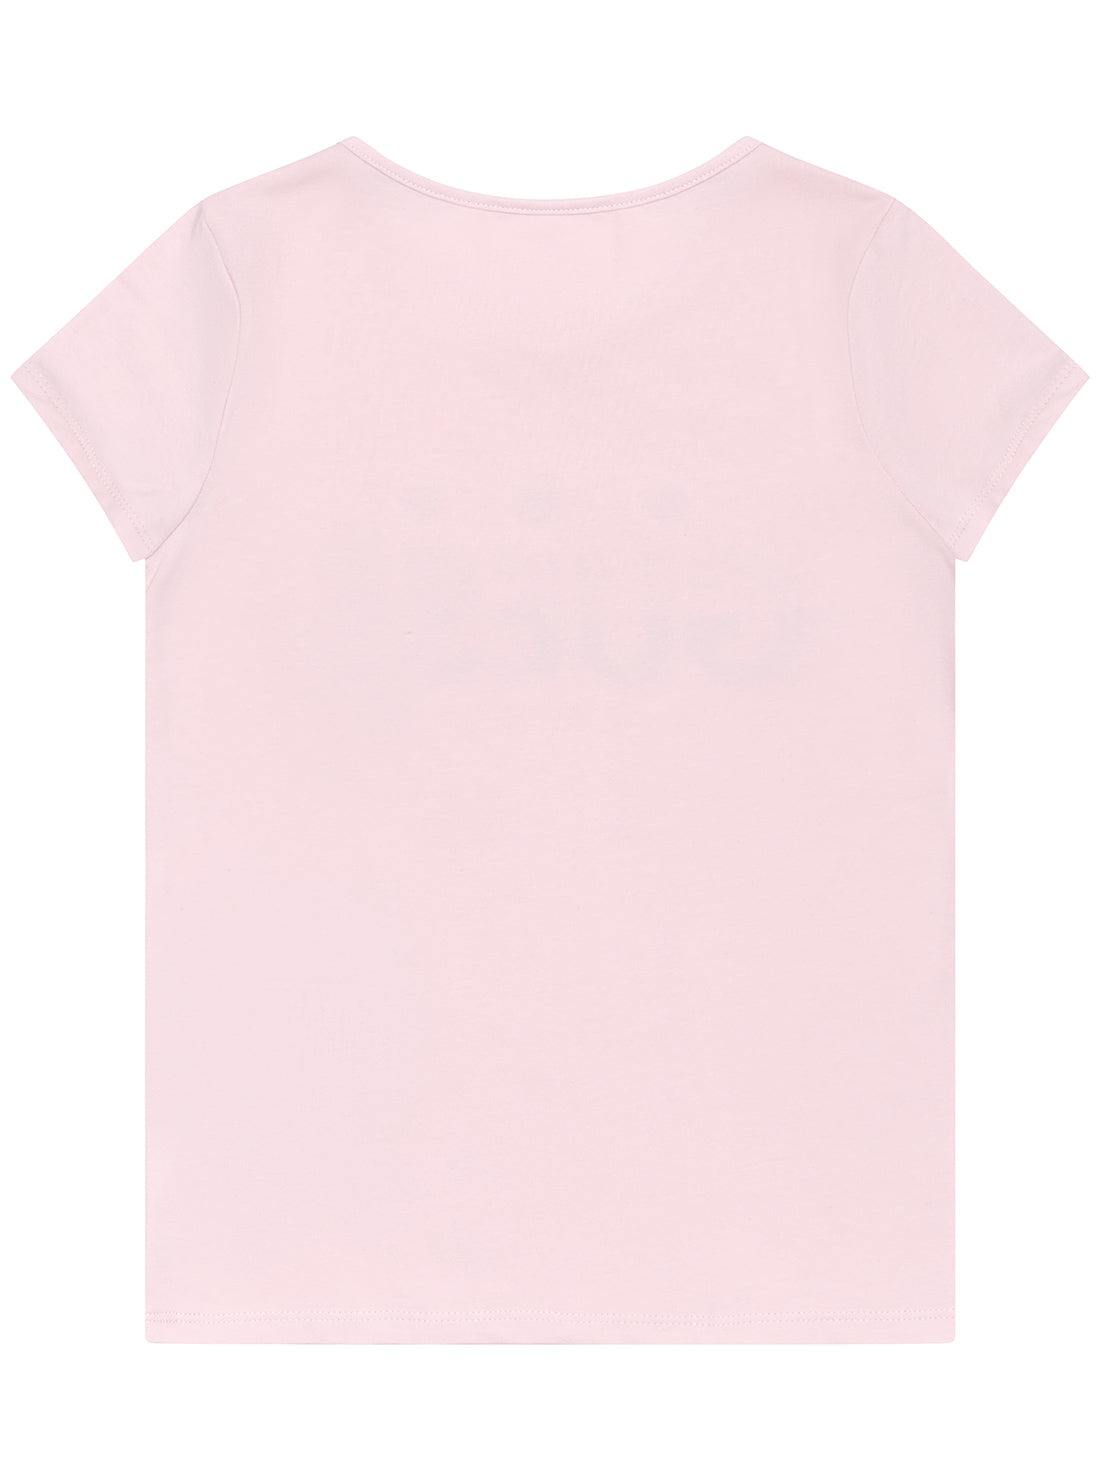 GUESS Ballet Pink Short Sleeve T-Shirt (2-7) back view